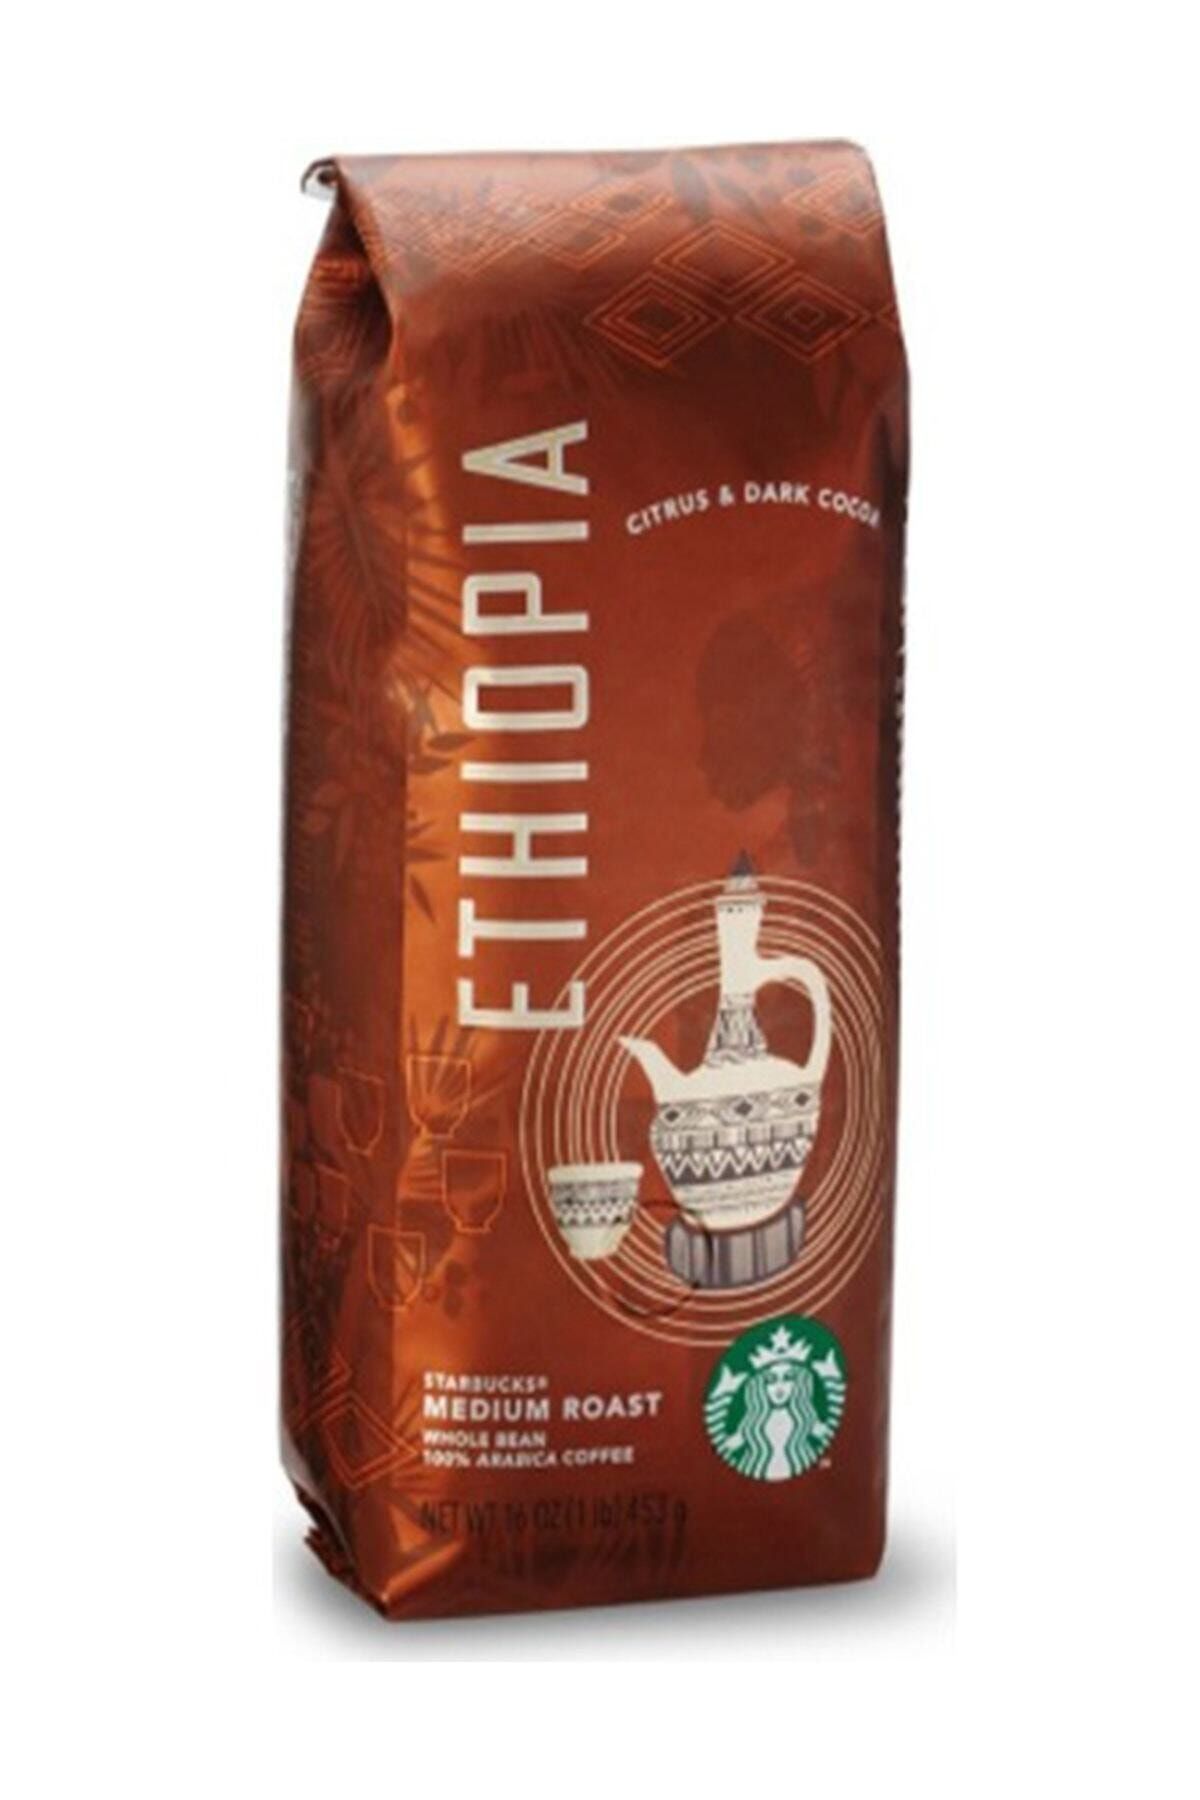 Starbucks French Press Için Çekilmiş Ethiopia Filtre Kahve 250 gr